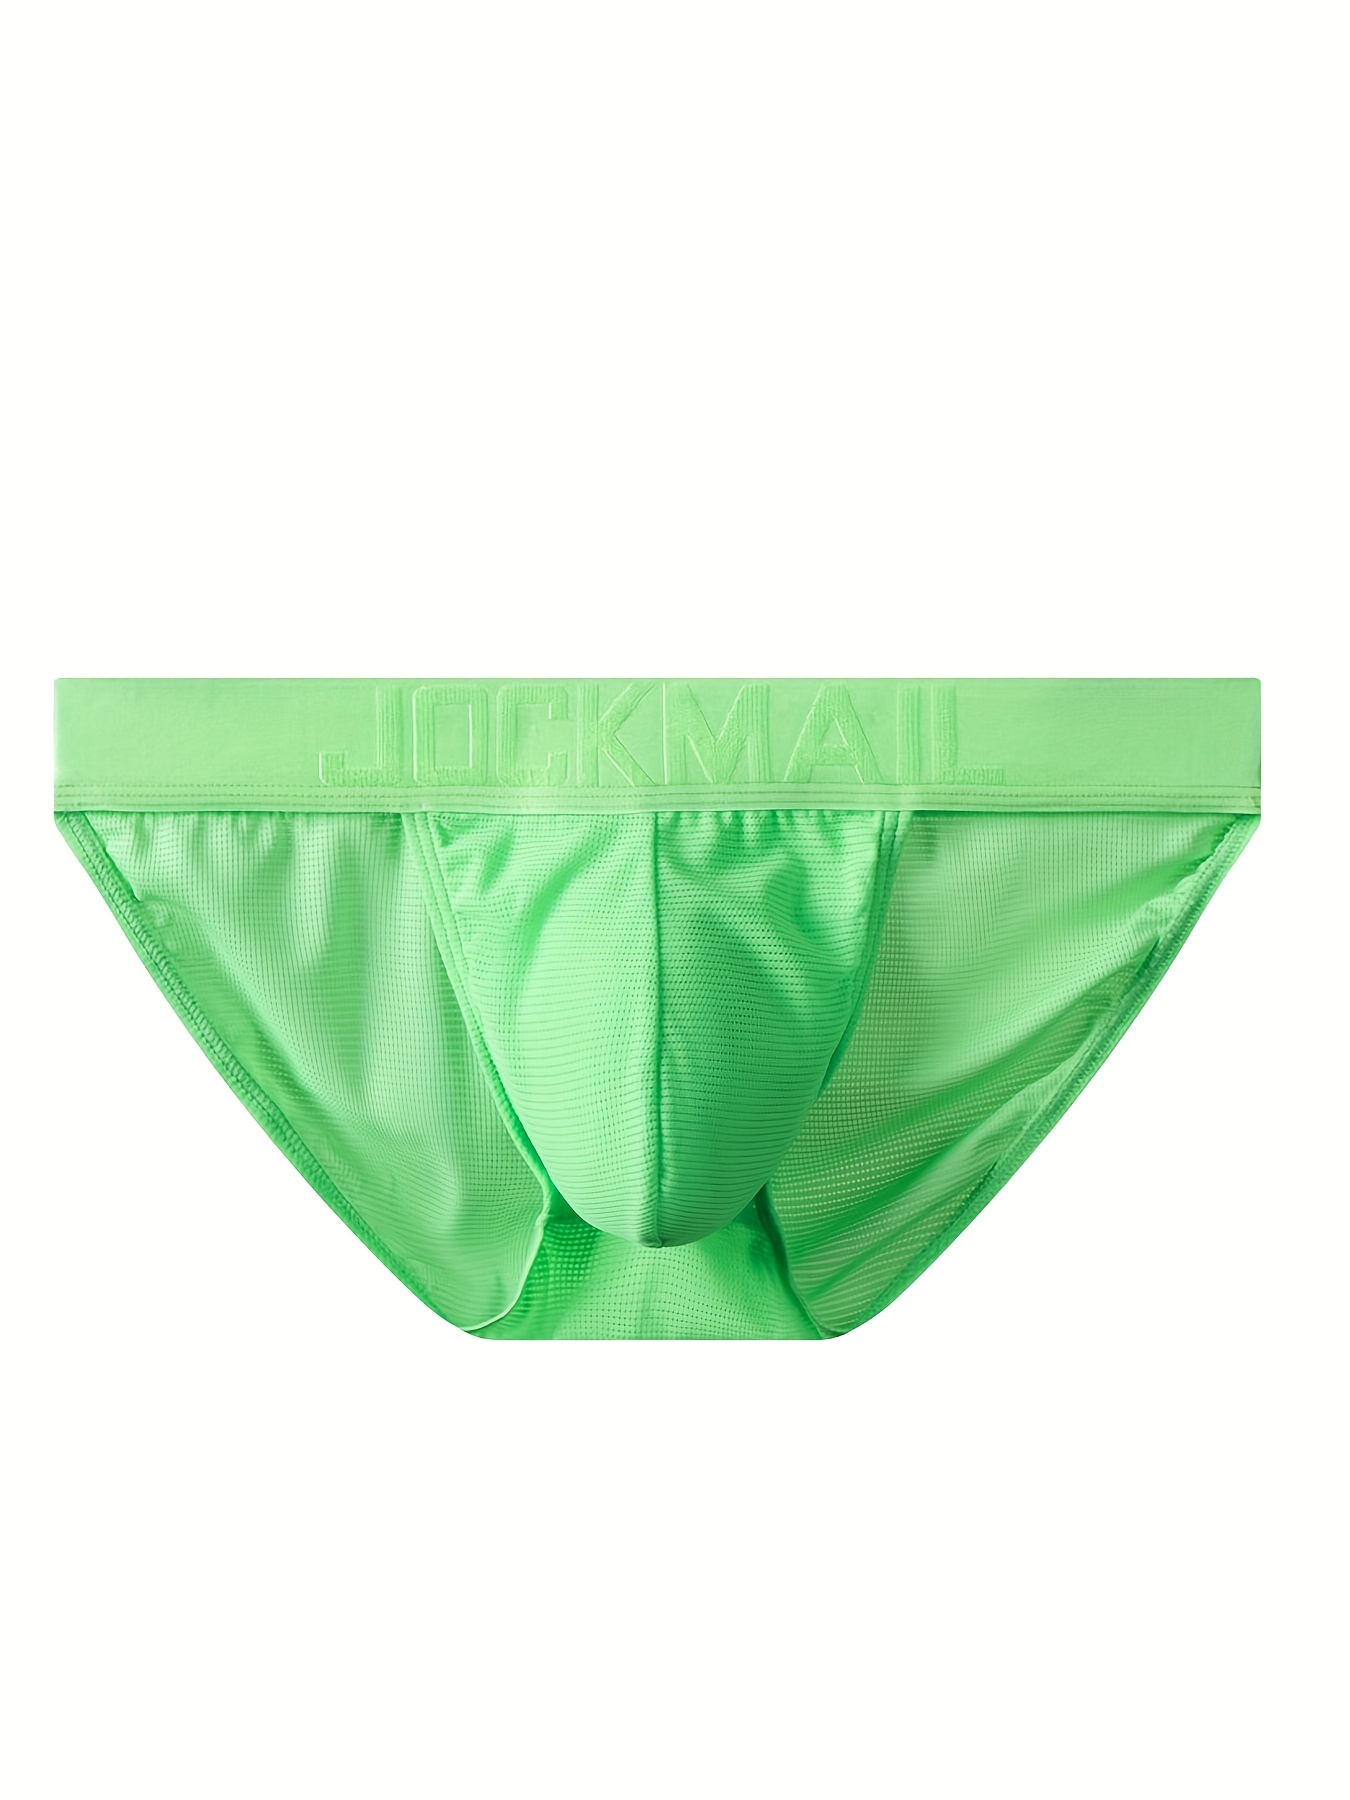 Vedolay Men's Briefs Open Hole Underwear for Men Comfortable Briefs  Breathable Men's Underwear,Green S 